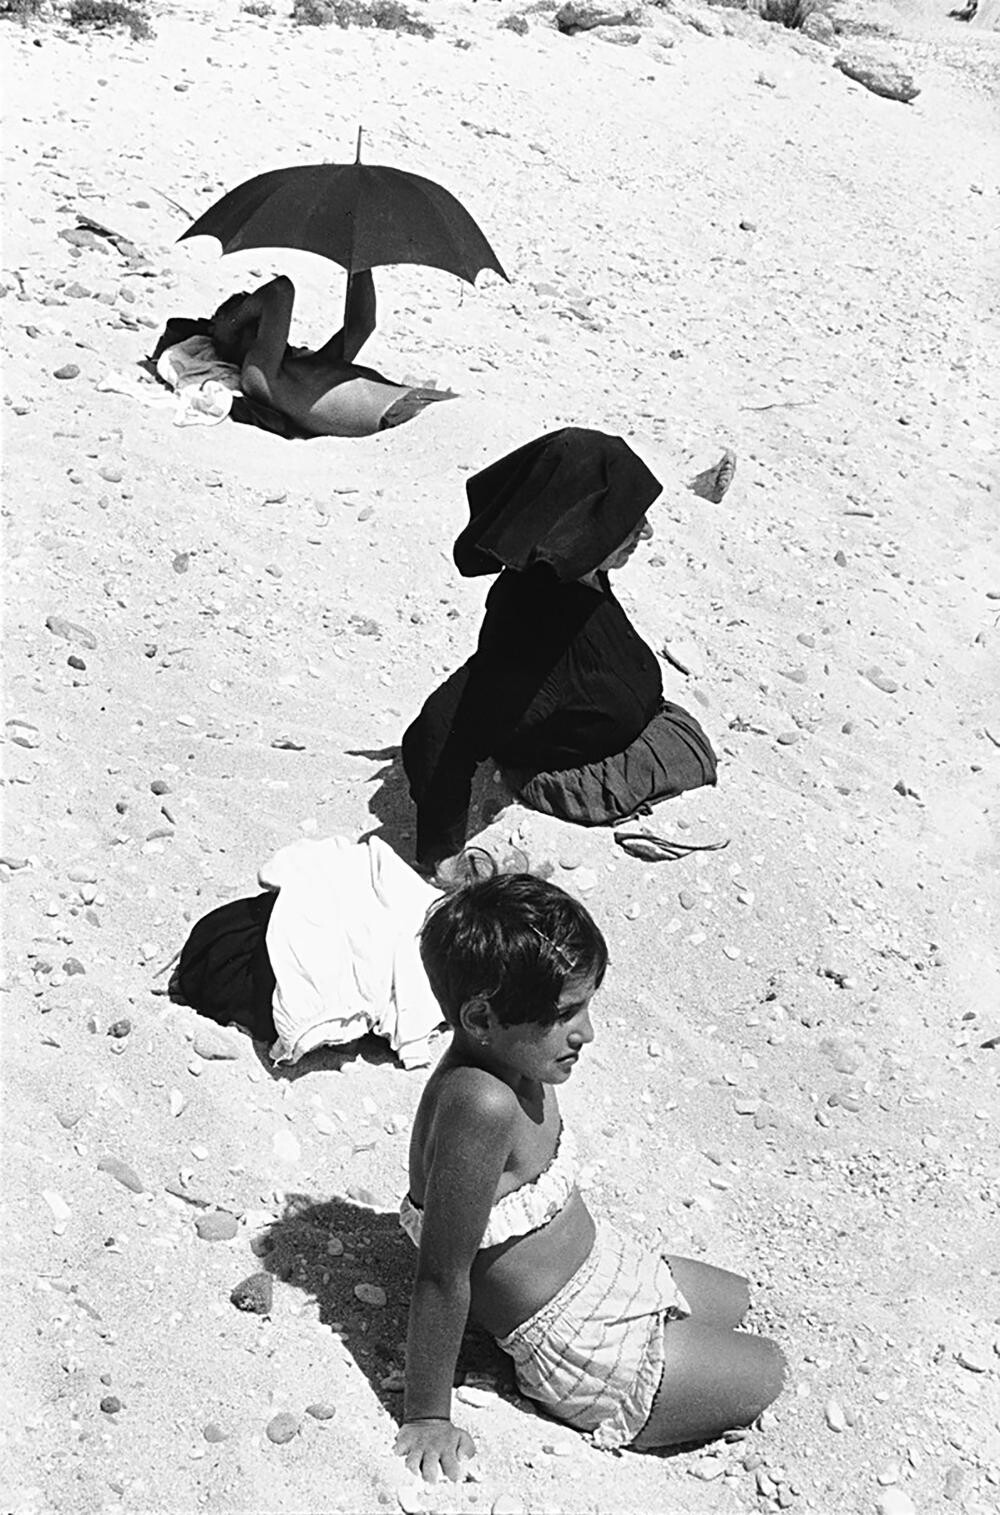 Пляж, Сардиния, 1963. Фотограф Анри Картье-Брессон